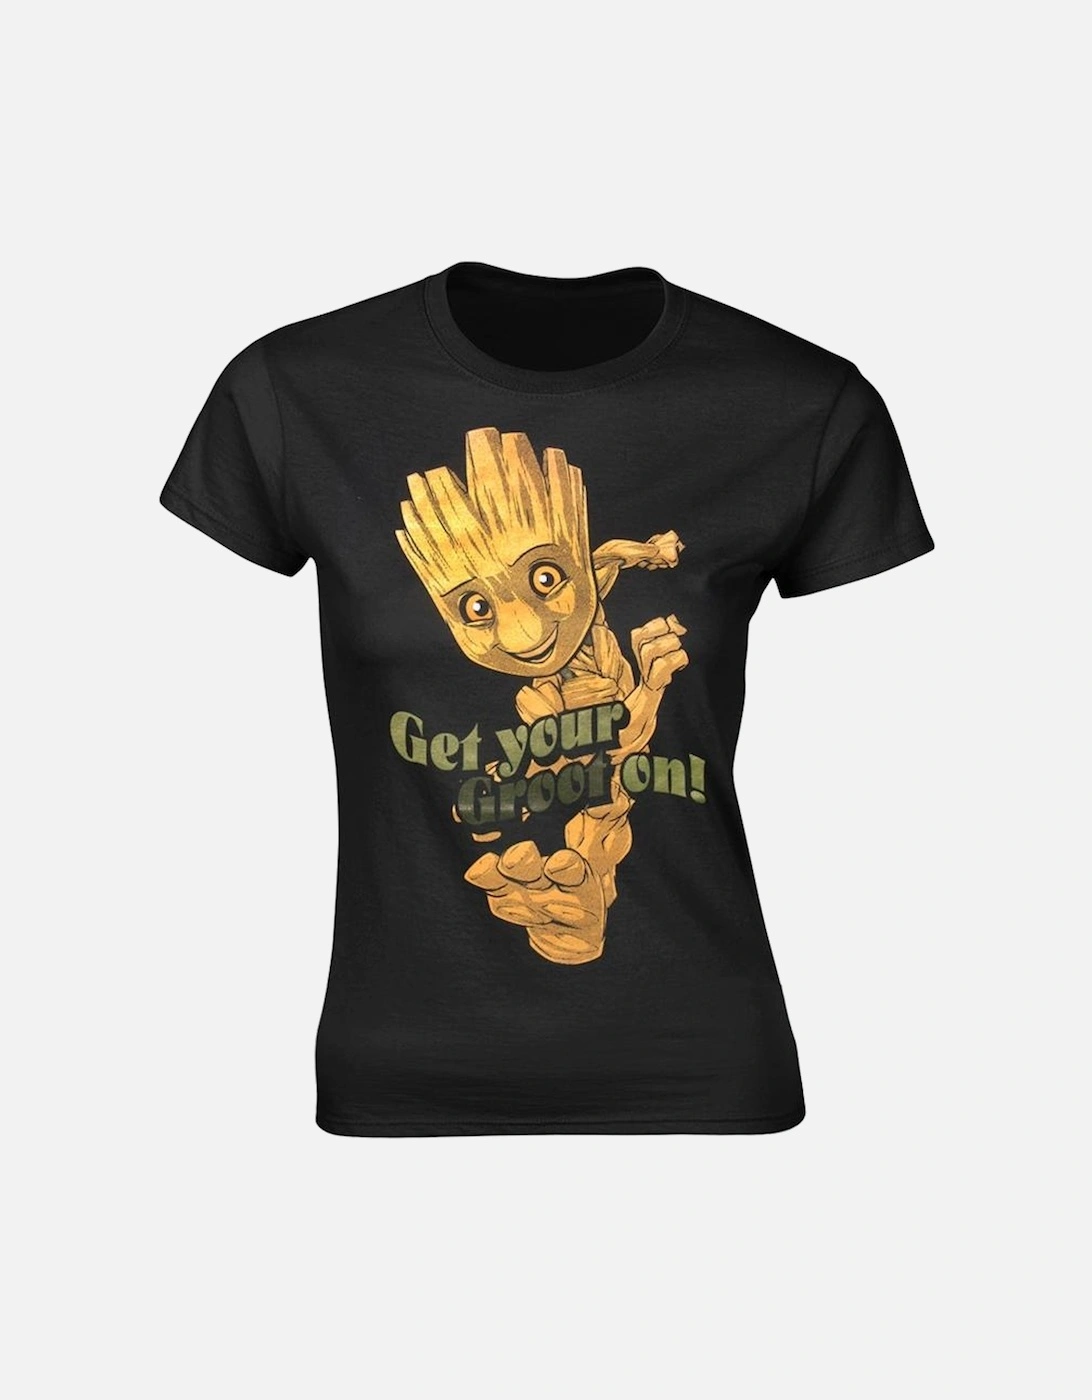 Girls Baby Groot Dance T-Shirt, 2 of 1